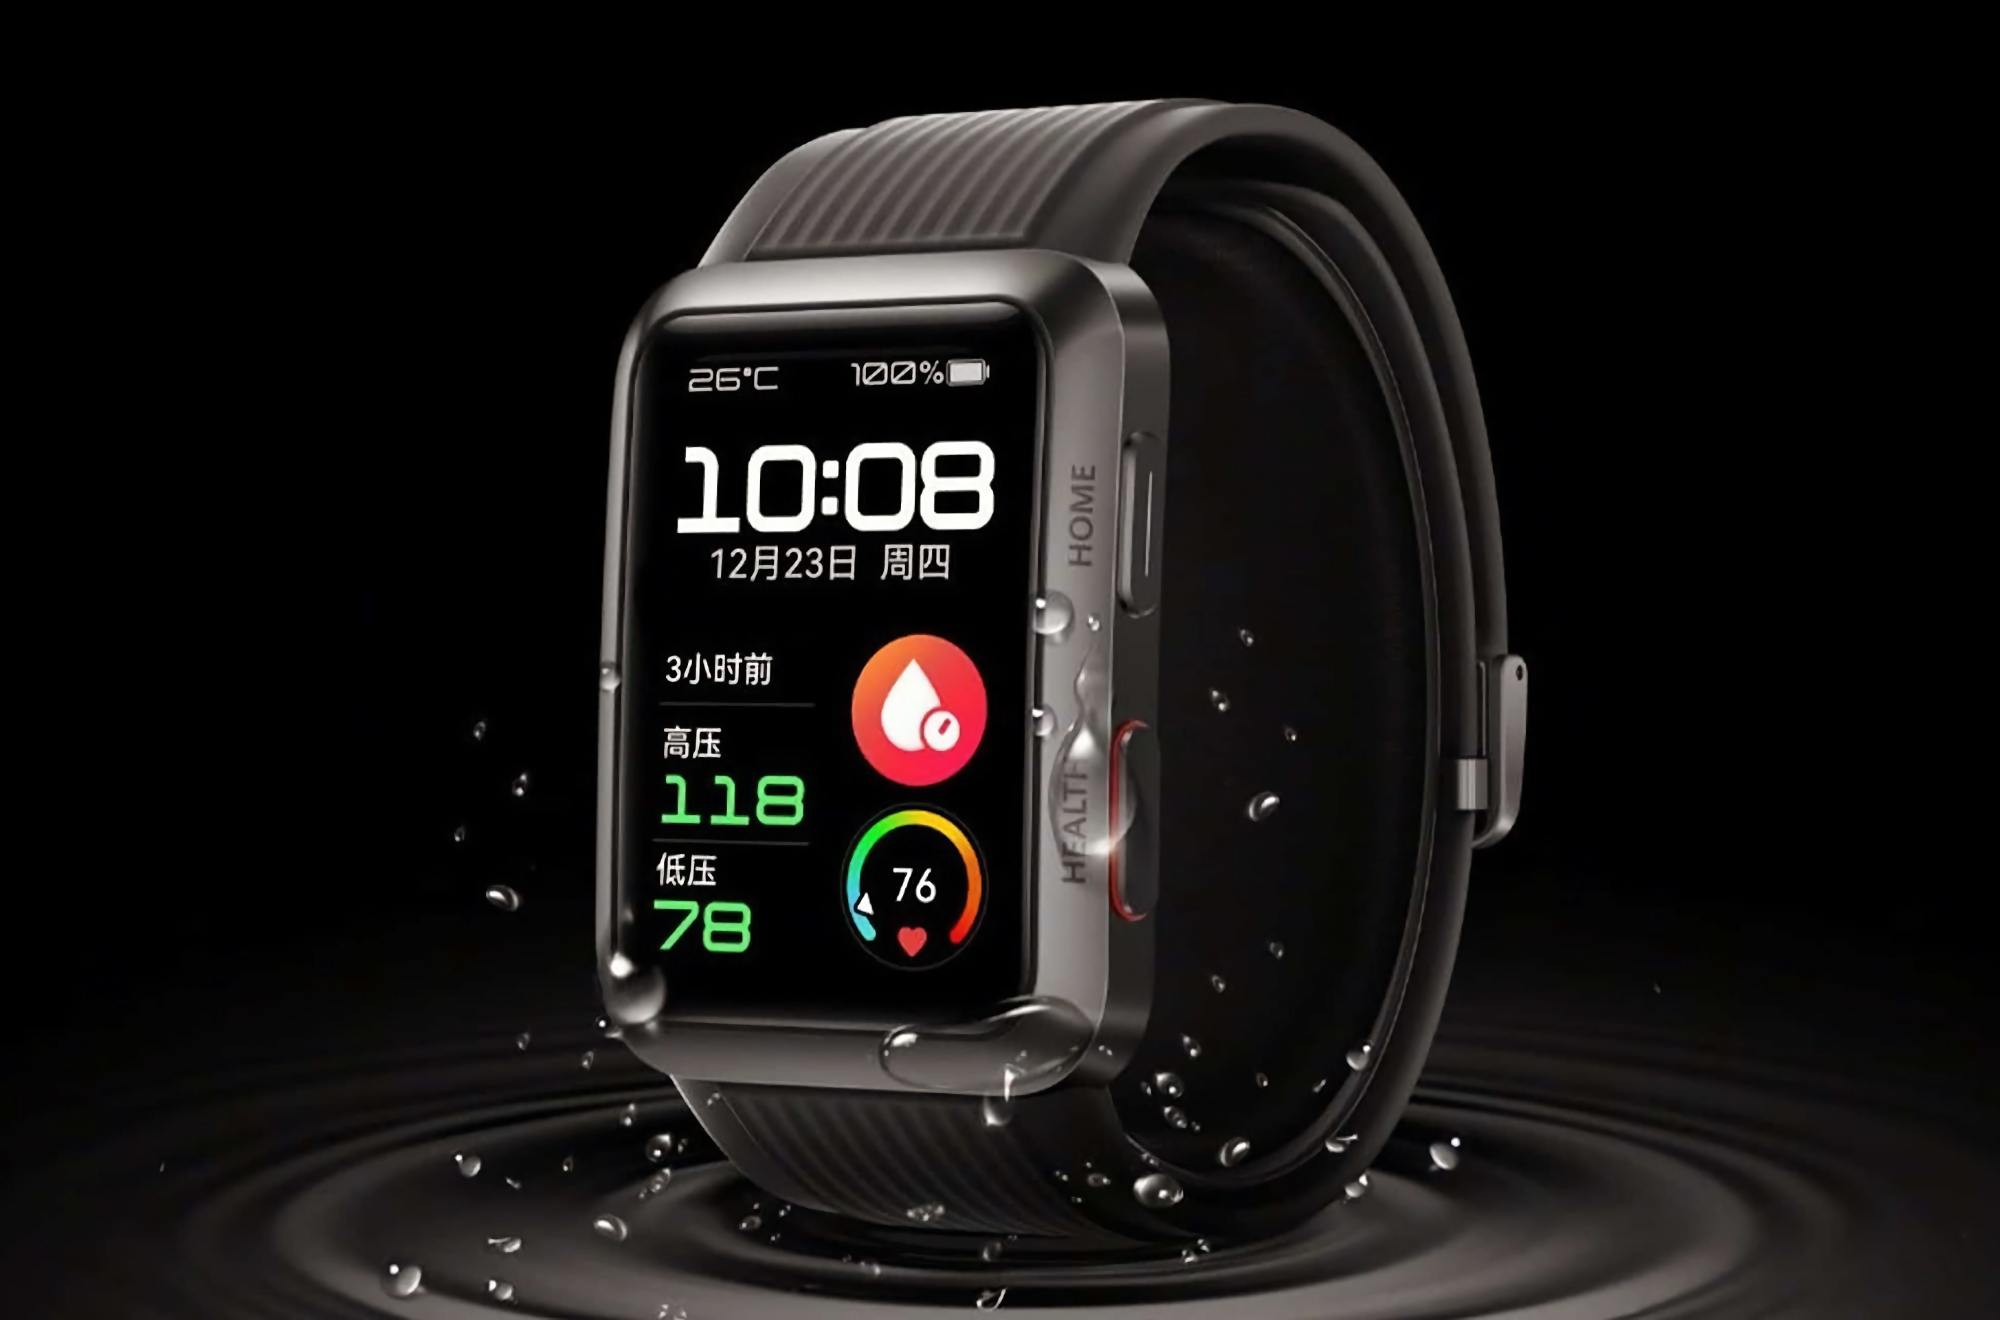 Rumeur : Huawei travaille sur une smartwatch Watch D2 avec fonction de mesure de la tension artérielle